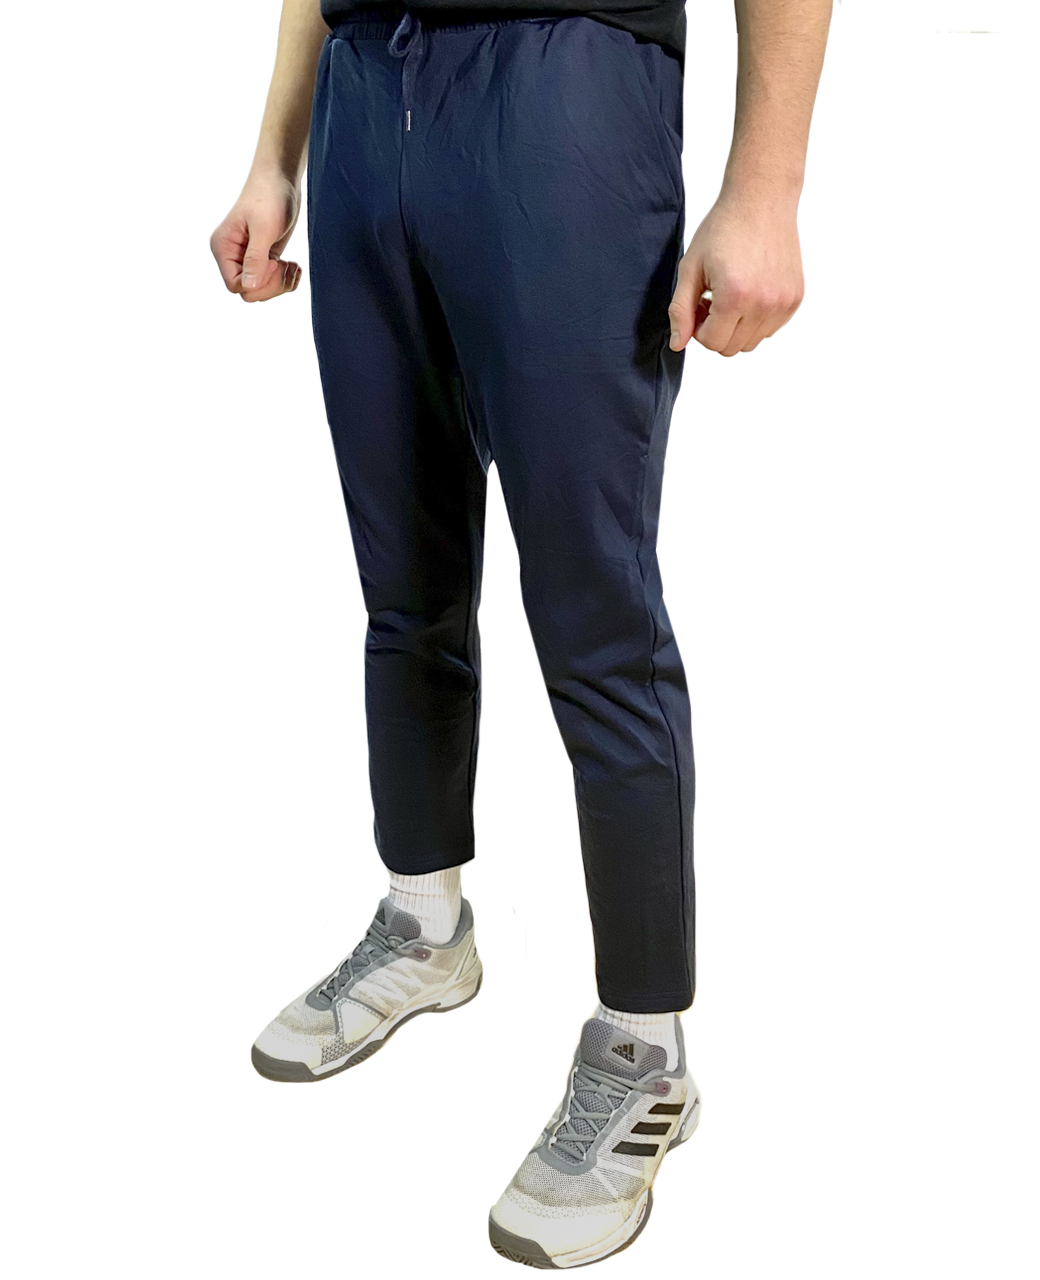 Купить мужские спортивные штаны синего цвета